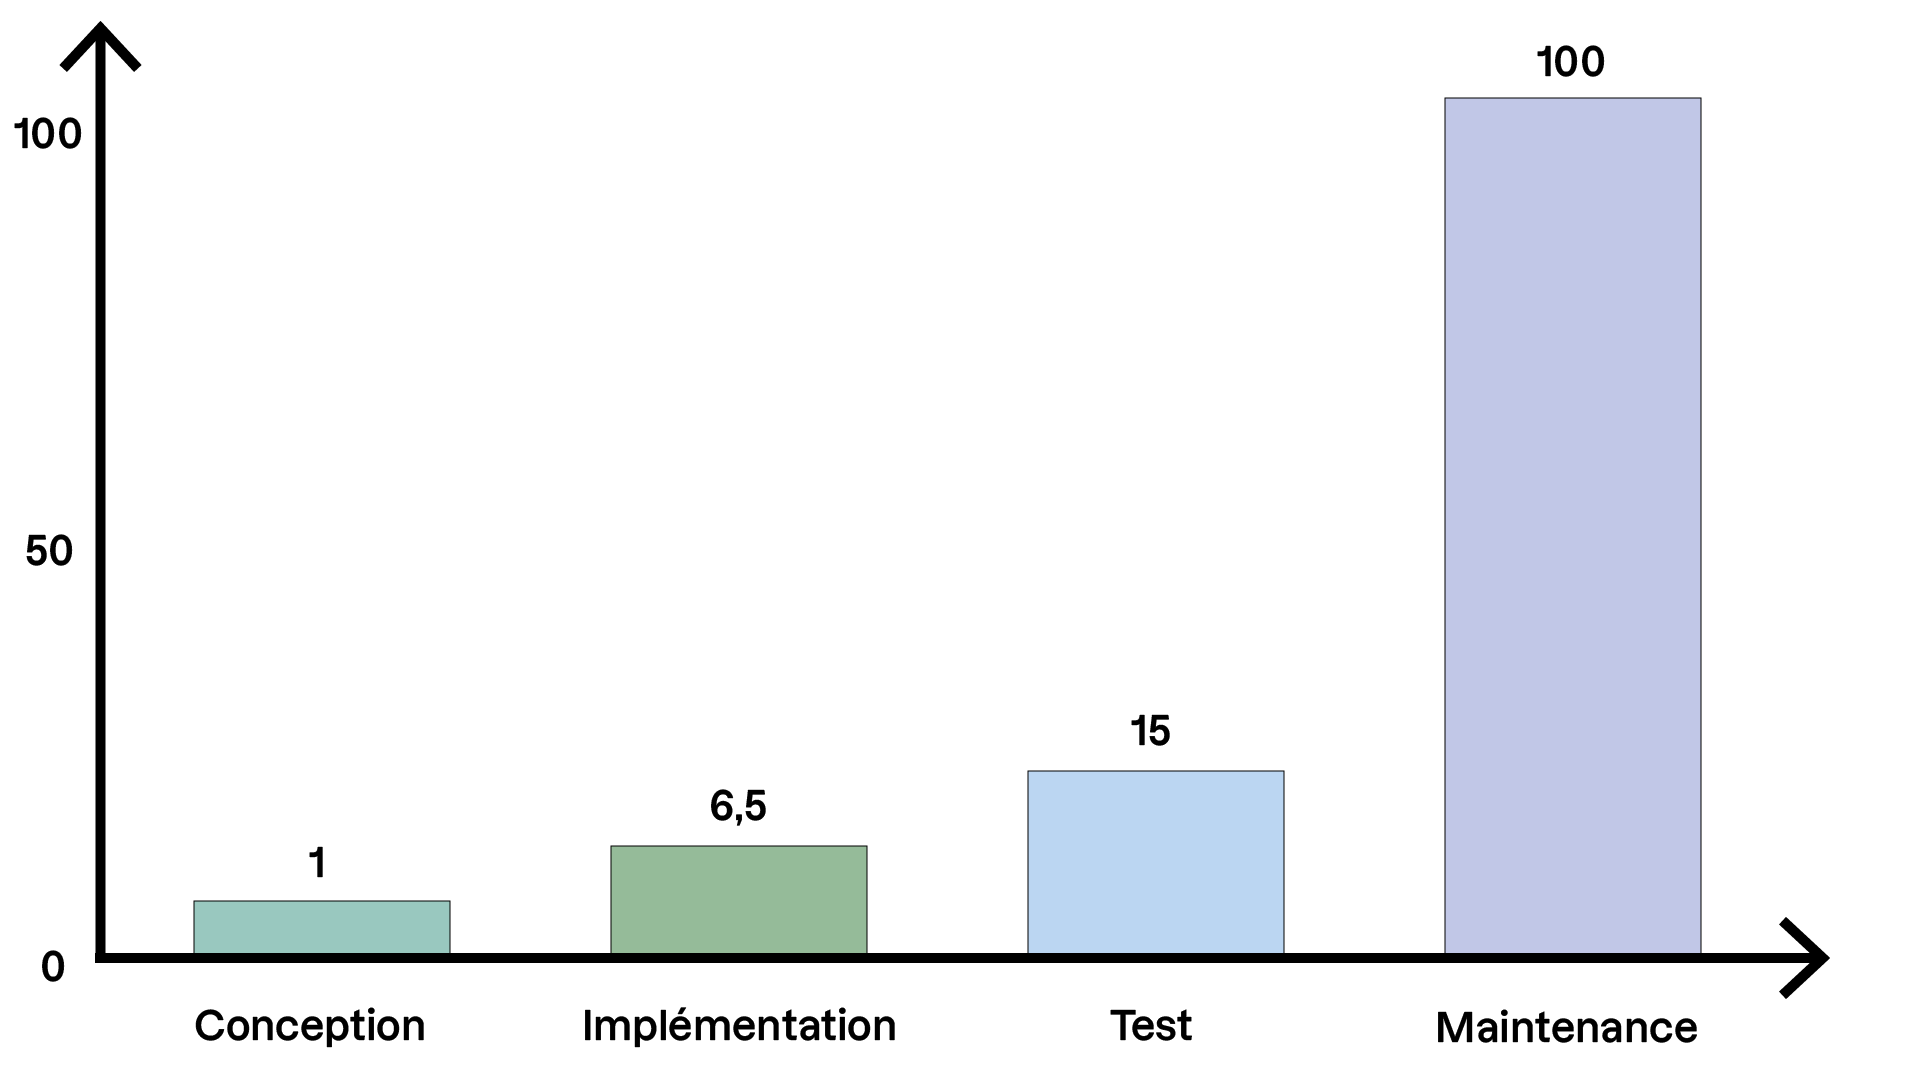 Histogramme montrant la répartition du coût relatif des différentes phases d'un projet : Conception (1), Implémentation (6,5), Test (15), et Maintenance (100). La maintenance a un coût nettement plus élevé que les autres phases.